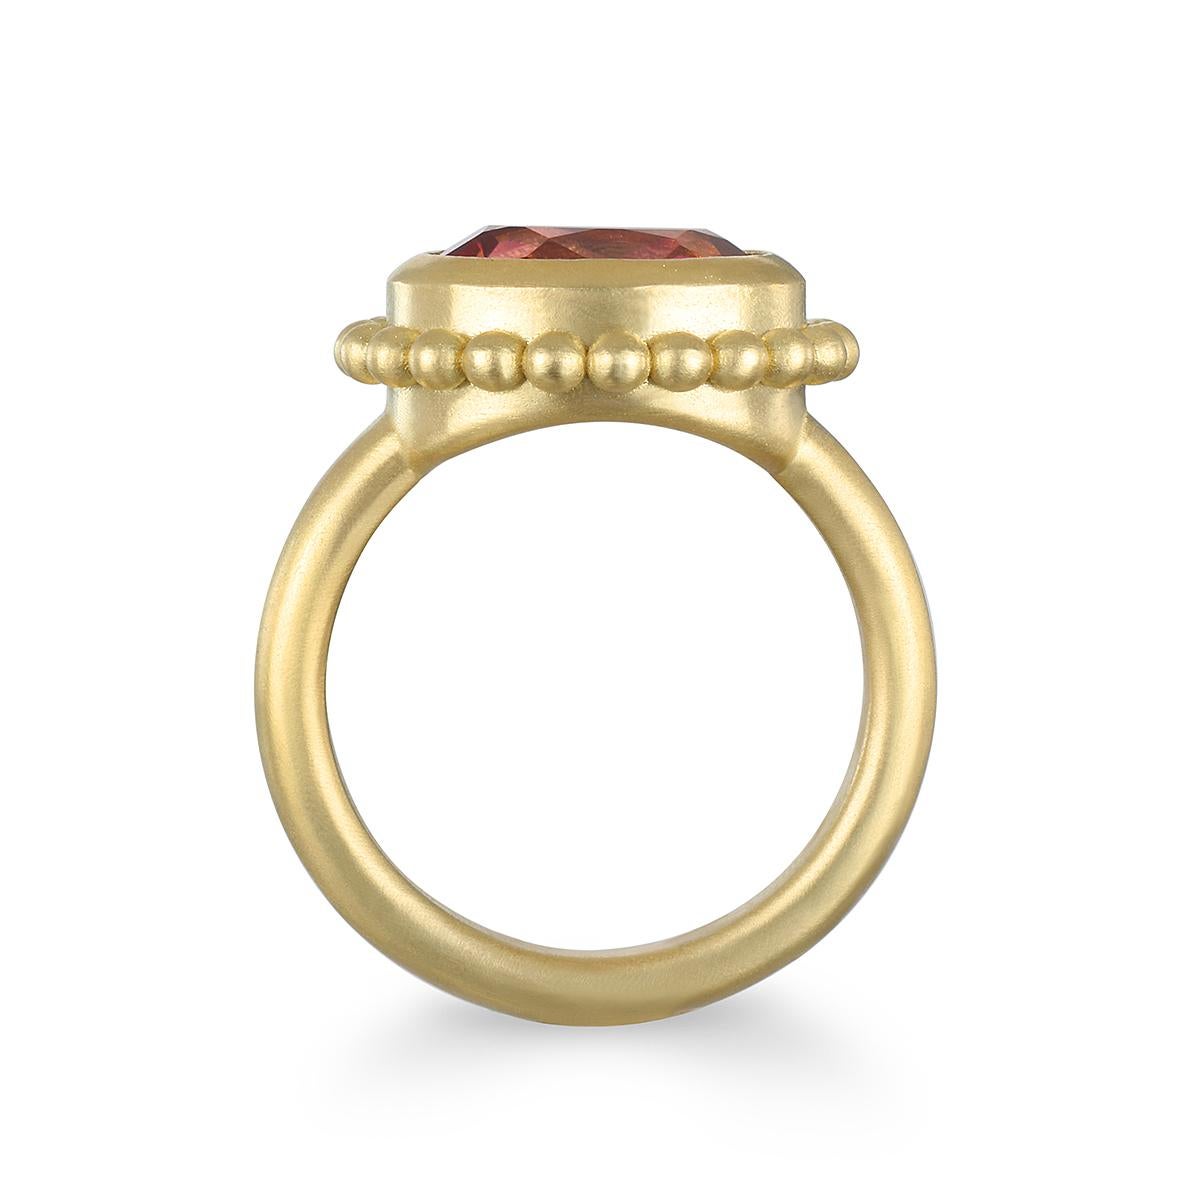 Fabriquée à la main par Faye Kim en or 18 carats, cette tourmaline rose de taille émeraude, à la teinte vibrante, est sertie d'un halo de perles de granulation pour une bague de style classique et intemporel.

Tourmaline :  2,75 carats
Dimensions de